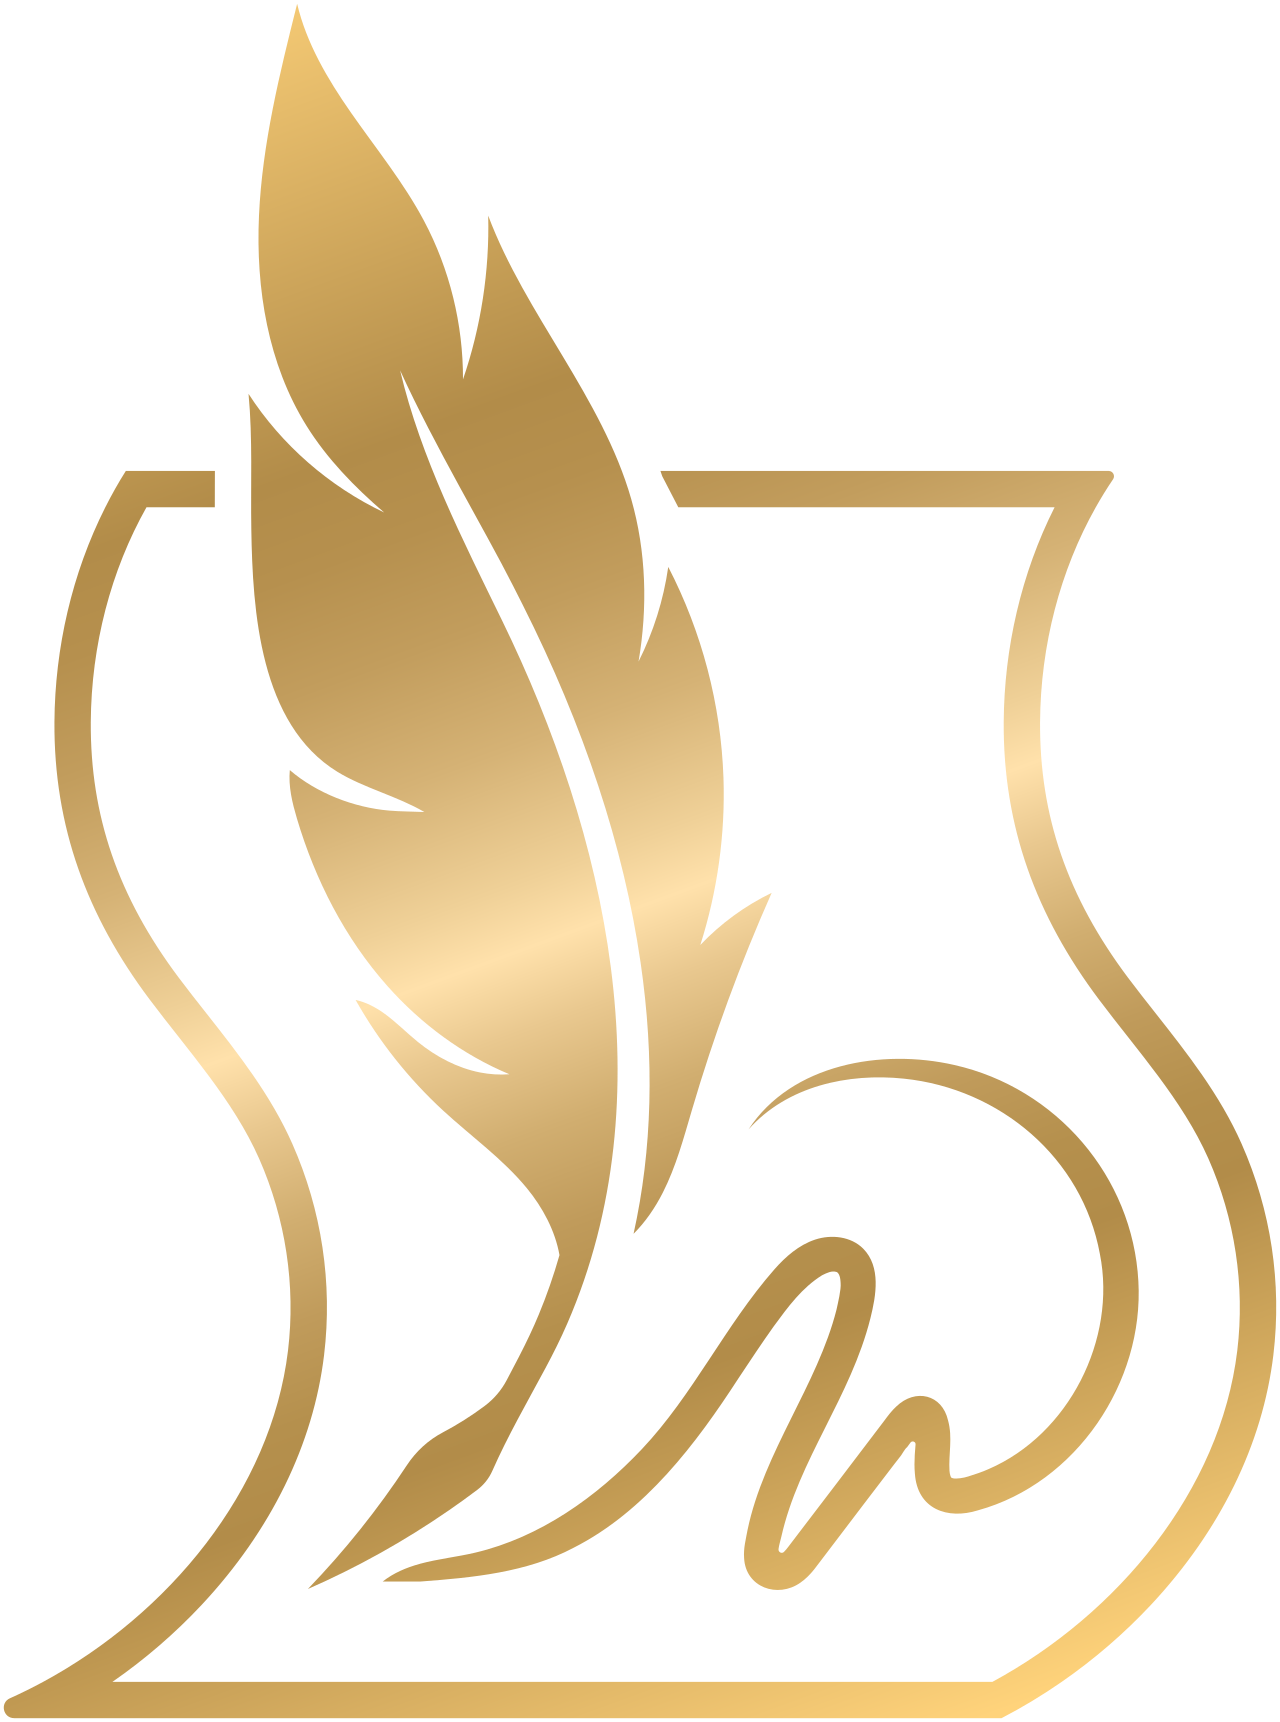 MAUDIA RENEE NOTARY 's logo